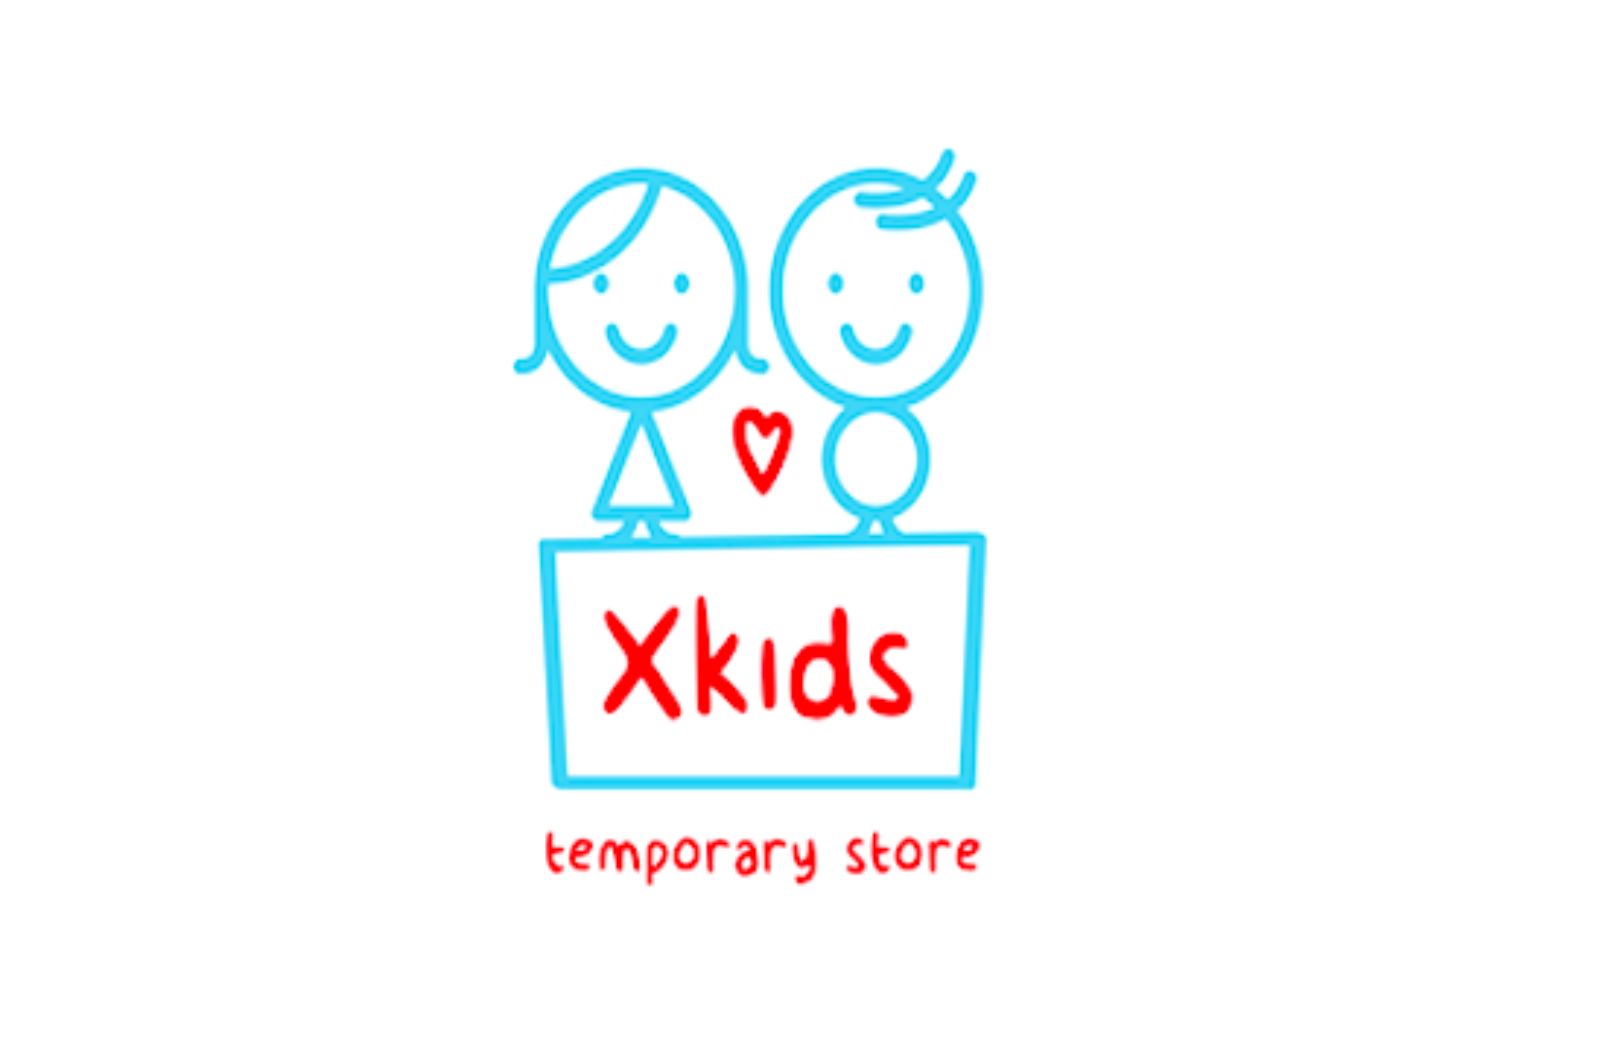 XKIDS, a Roma il temporary store per bambini